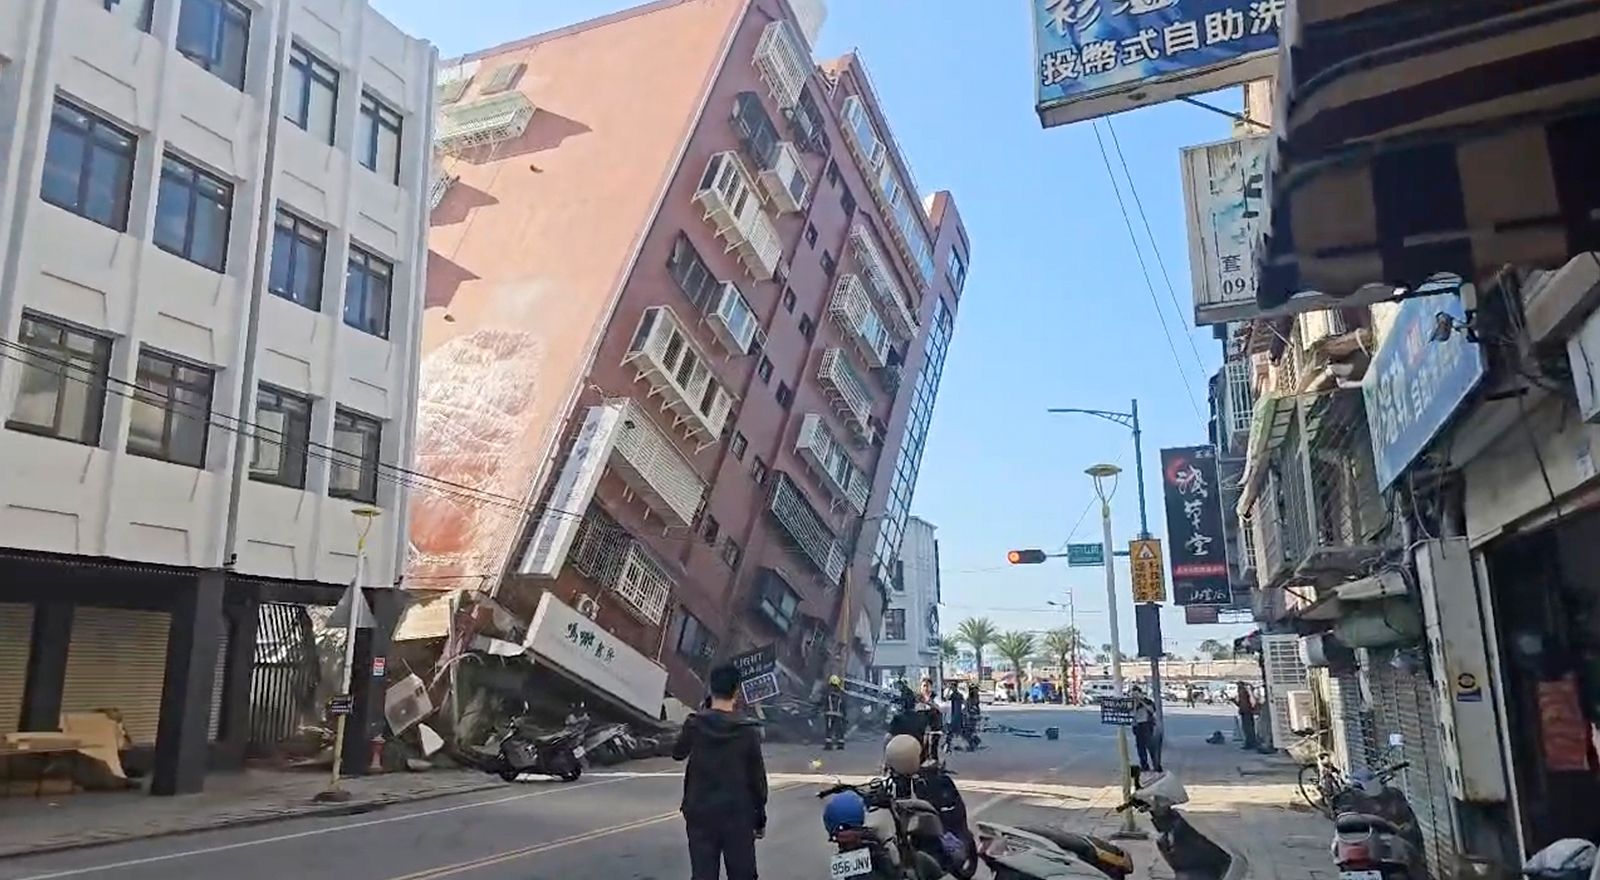 Найпотужніший за 25 років: на Тайвані наробив лиха землетрус магнітудою 7,4 бала, фото